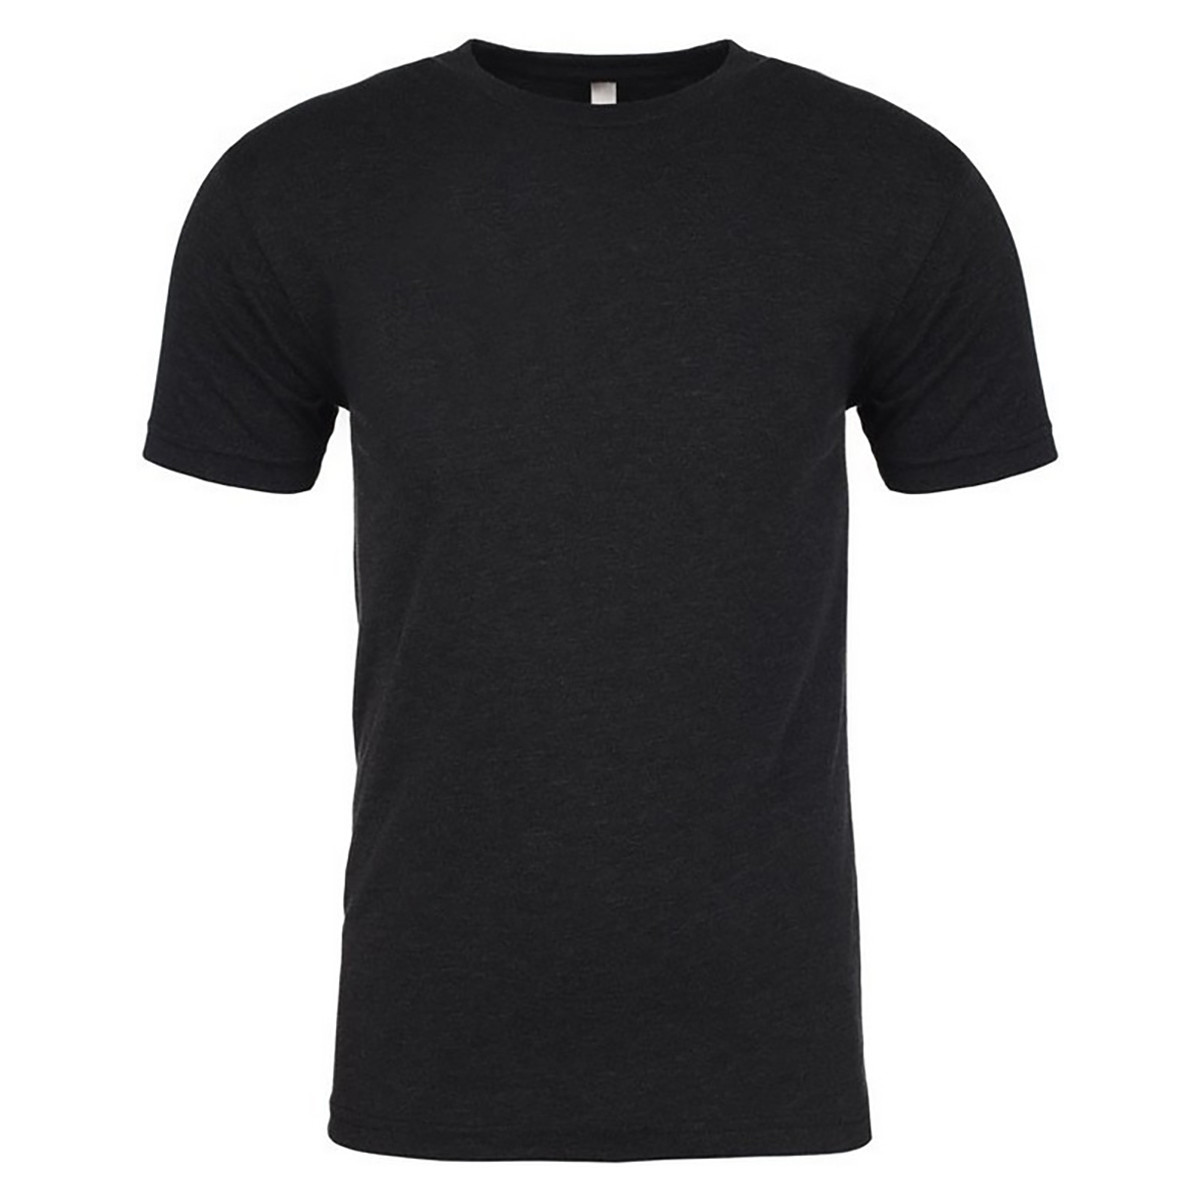 Vêtements Homme T-shirts manches longues Next Level Tri-Blend Noir